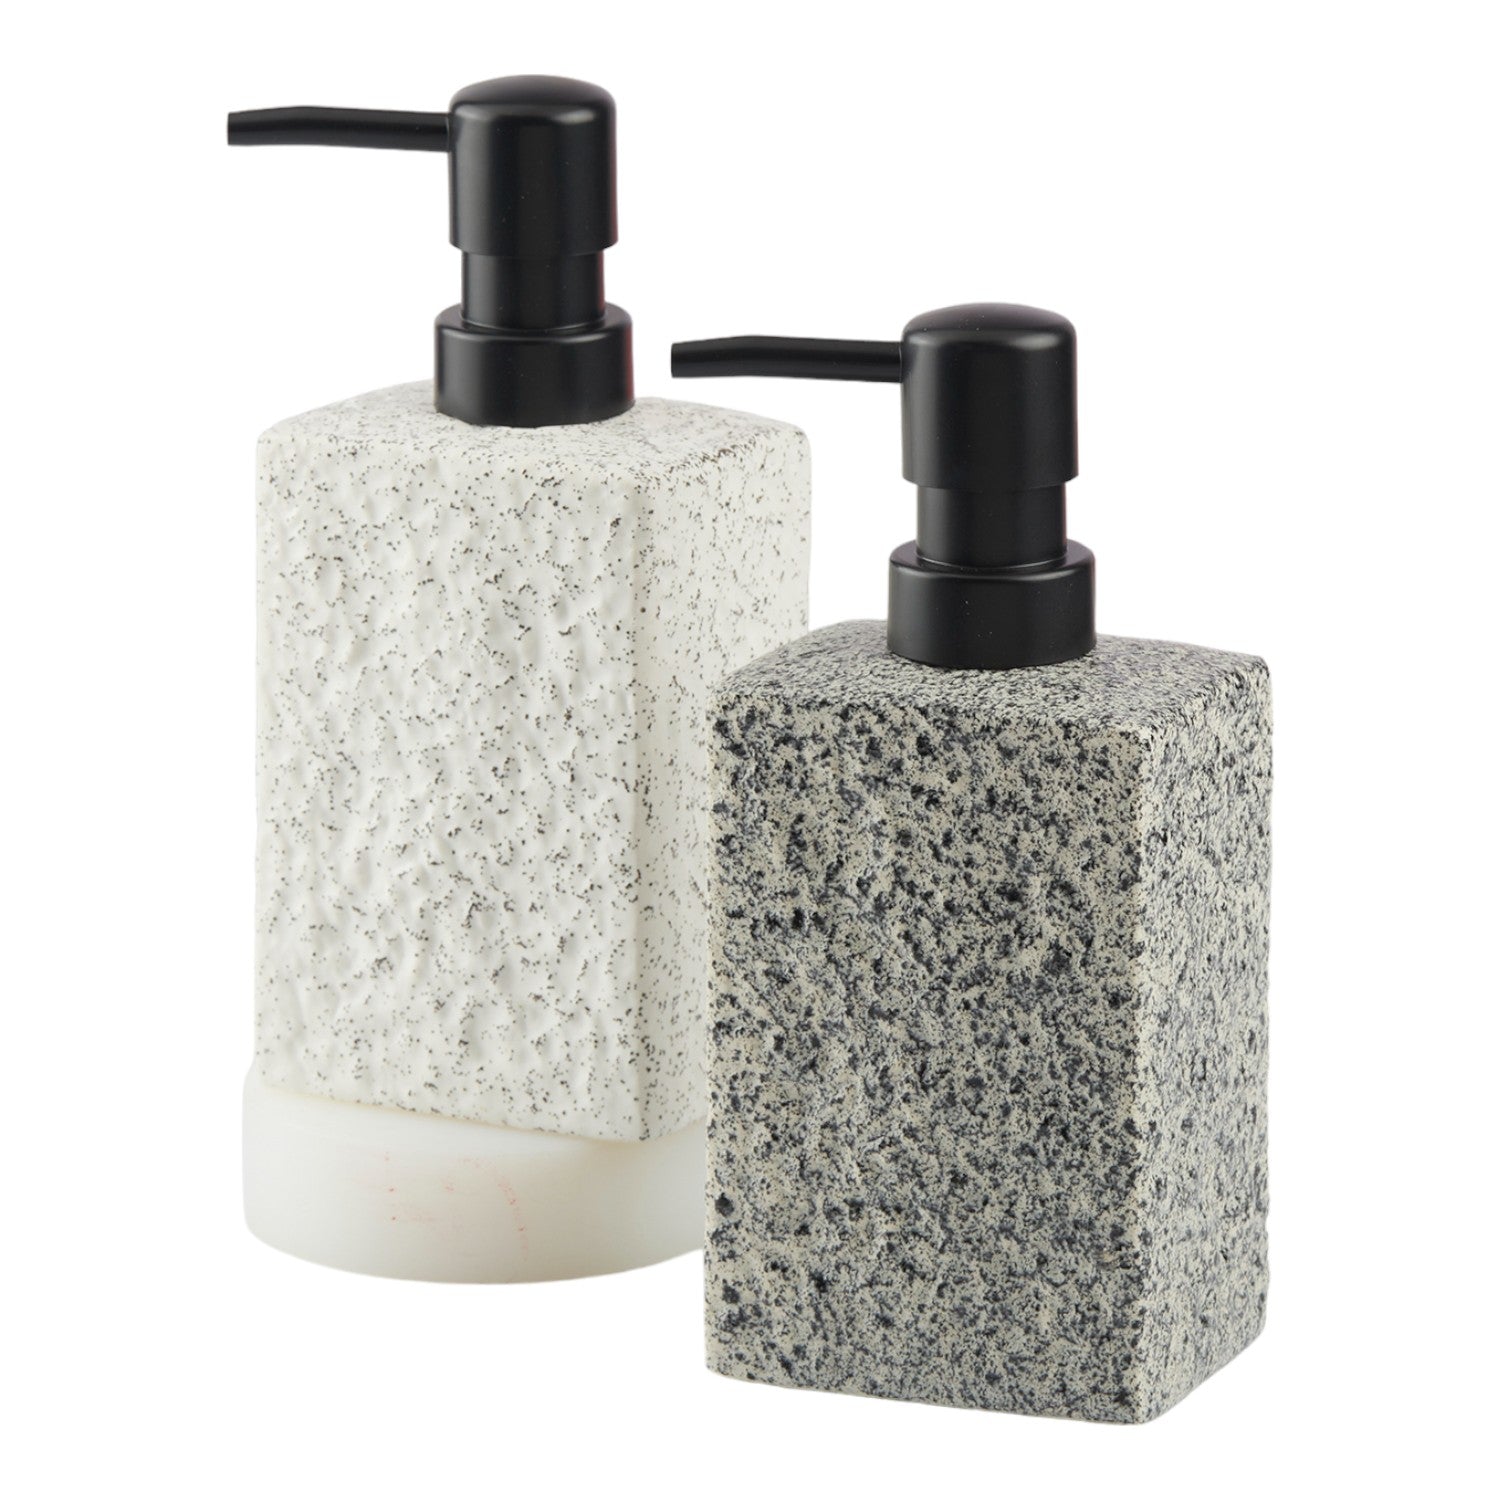 Ceramic Soap Dispenser liquid handwash pump for Bathroom, Set of 1, White (10621)